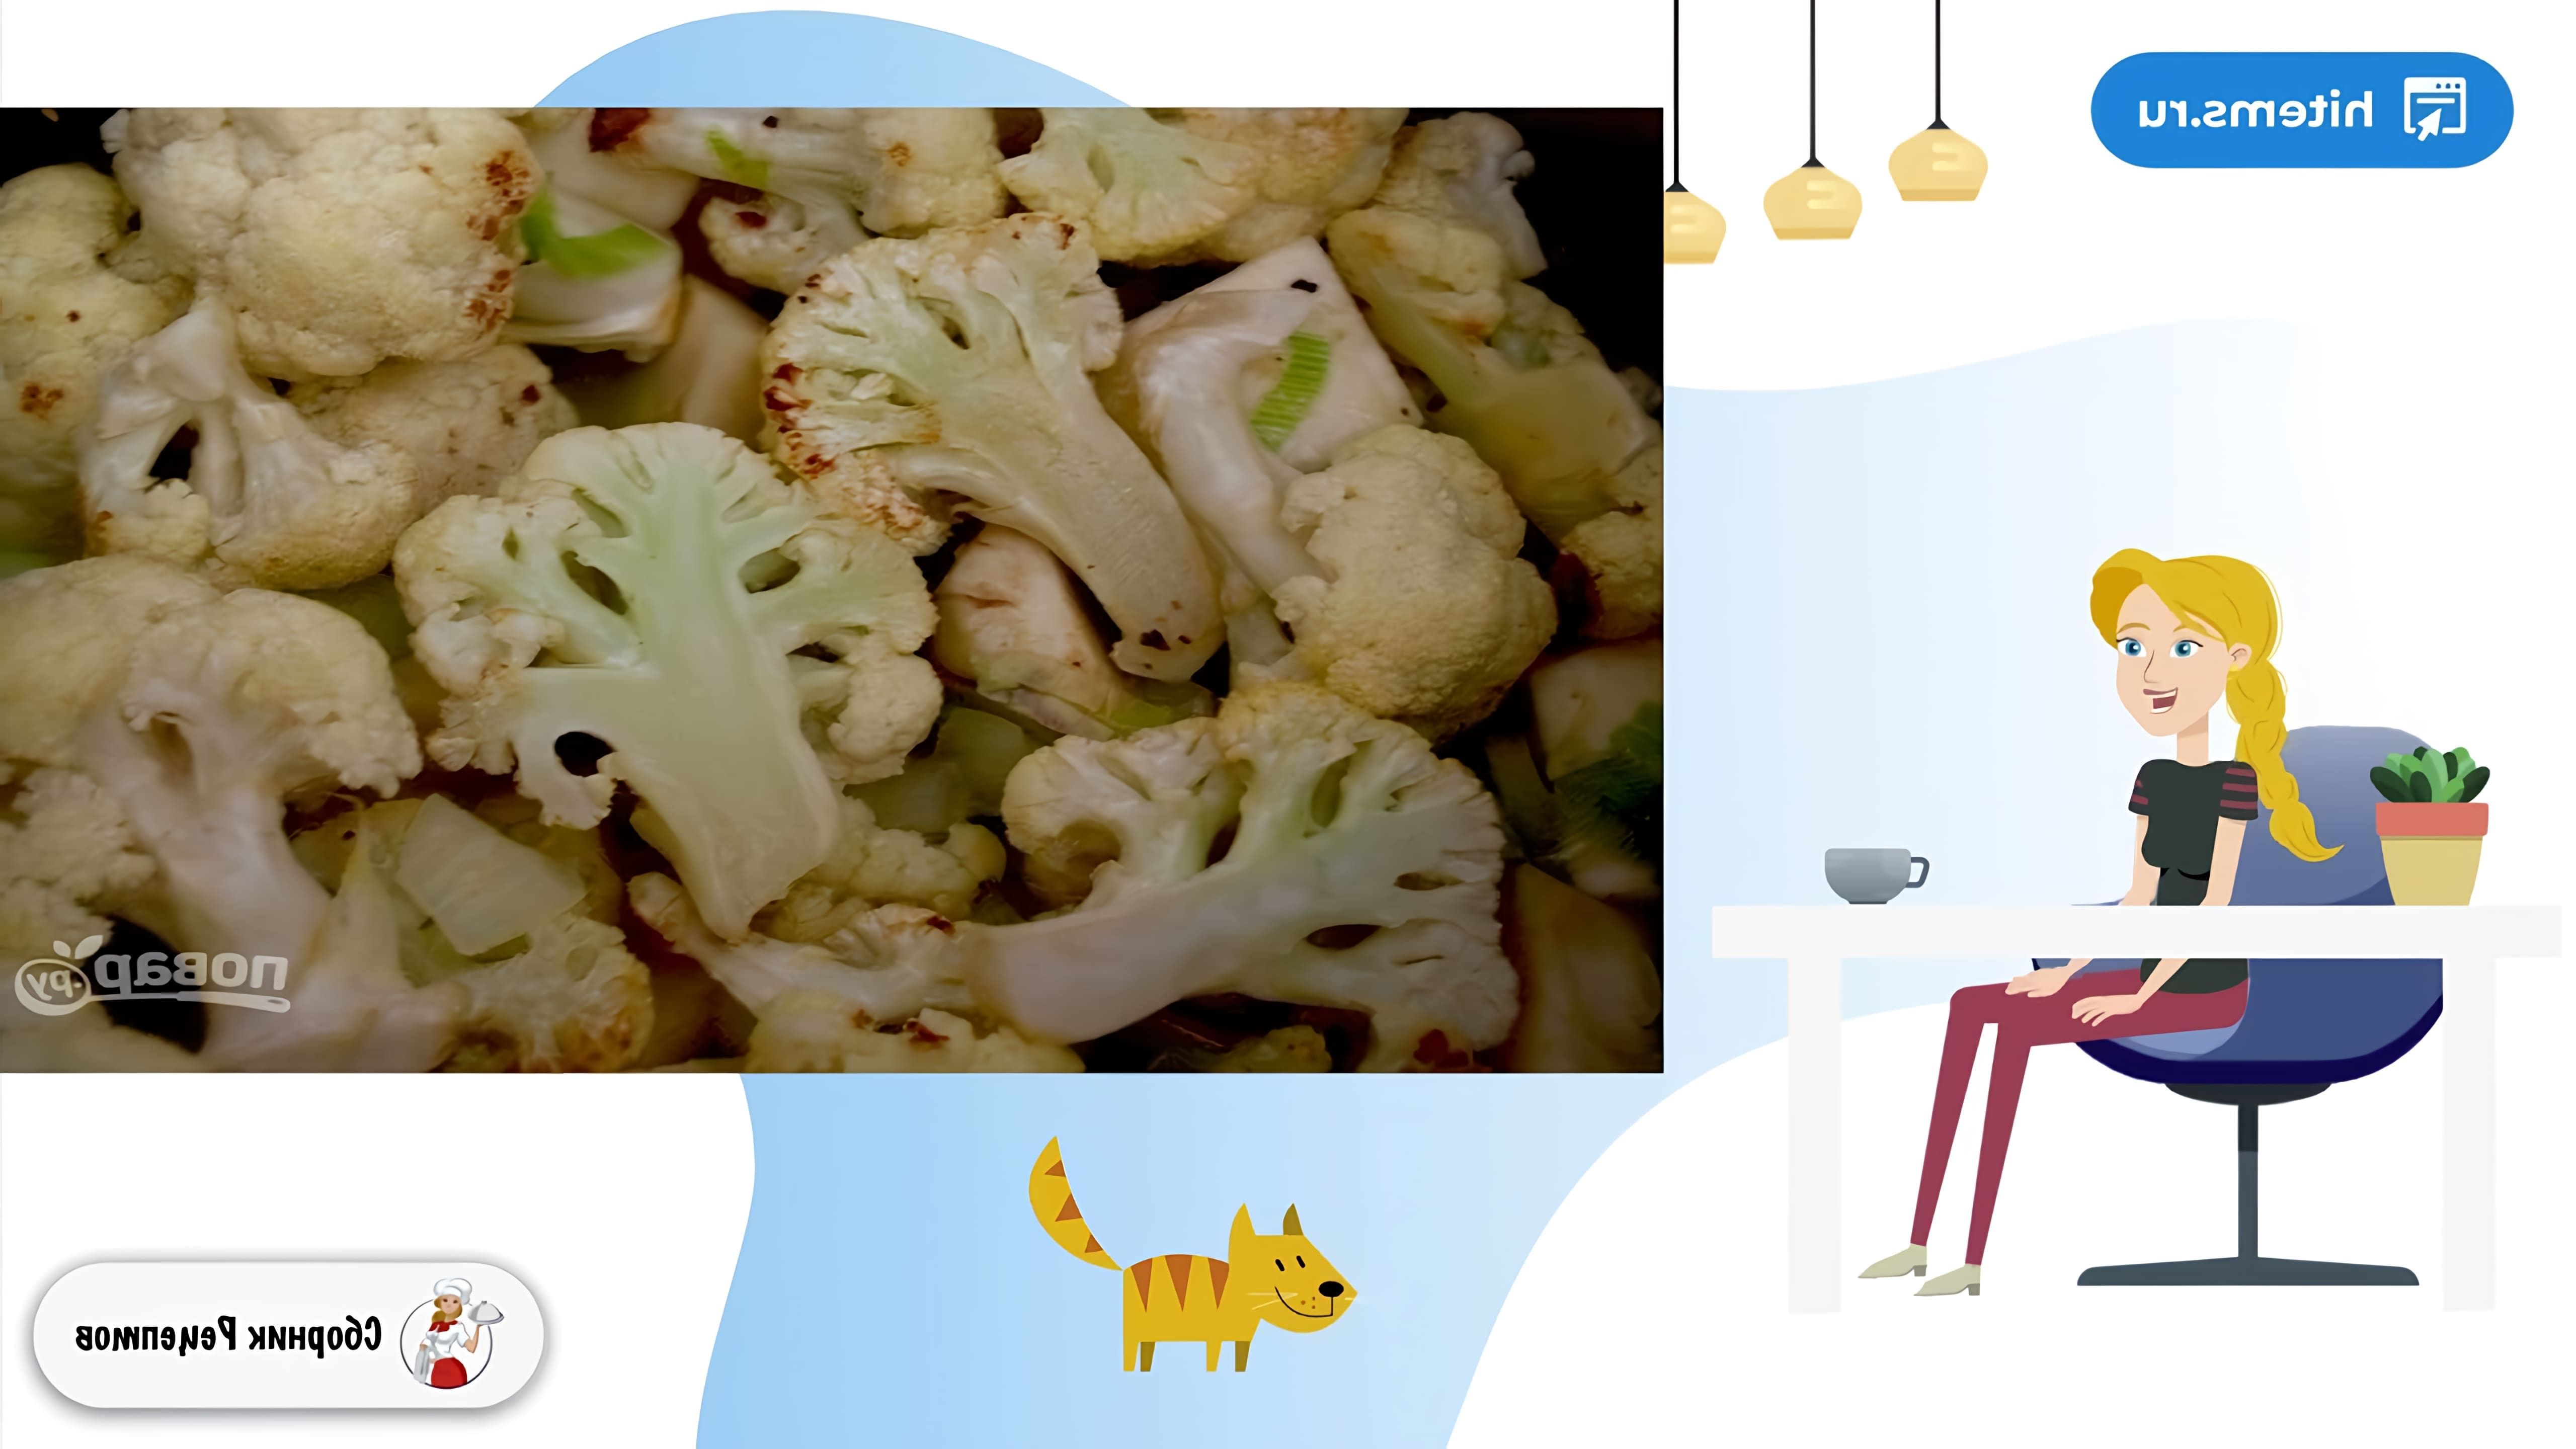 В этом видео демонстрируется рецепт приготовления супа из лука-порея и сельдерея